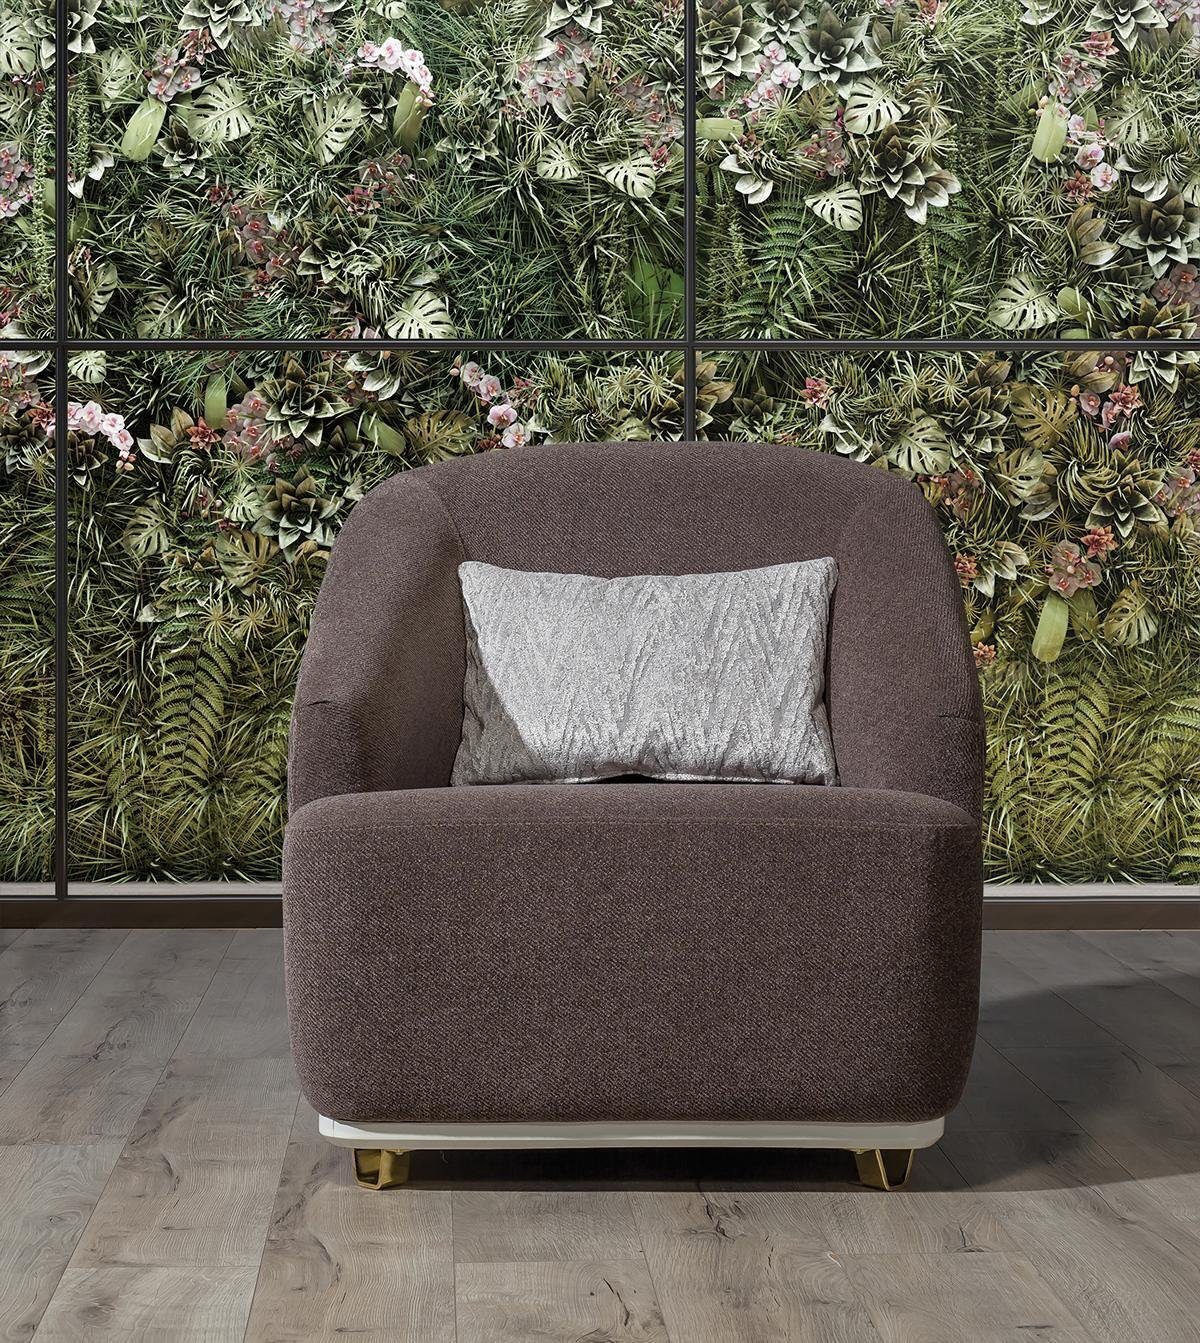 JVmoebel Sessel Wohnzimmer Sessel Einsitzer 1Sitz Sofa Couch Möbel Metall mit Textil